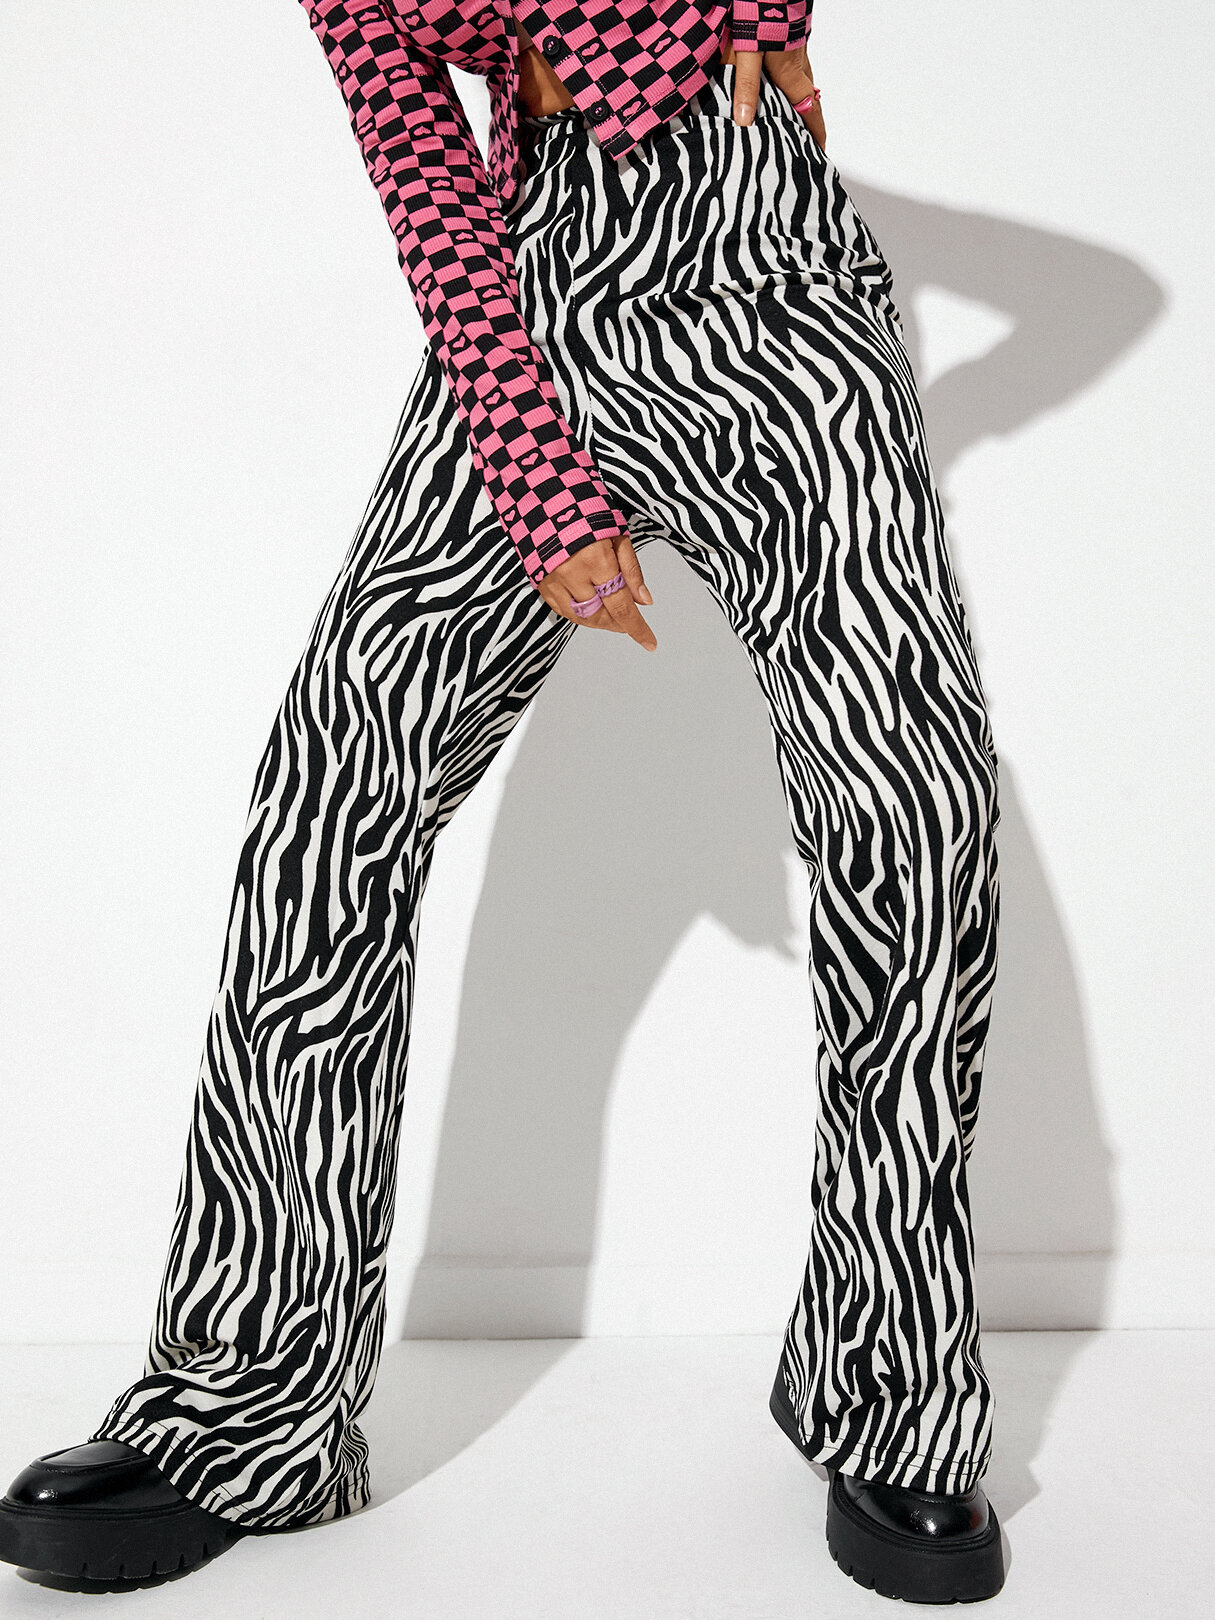 Moda Zebra Padrão Impressão de perna larga Calças para meninas